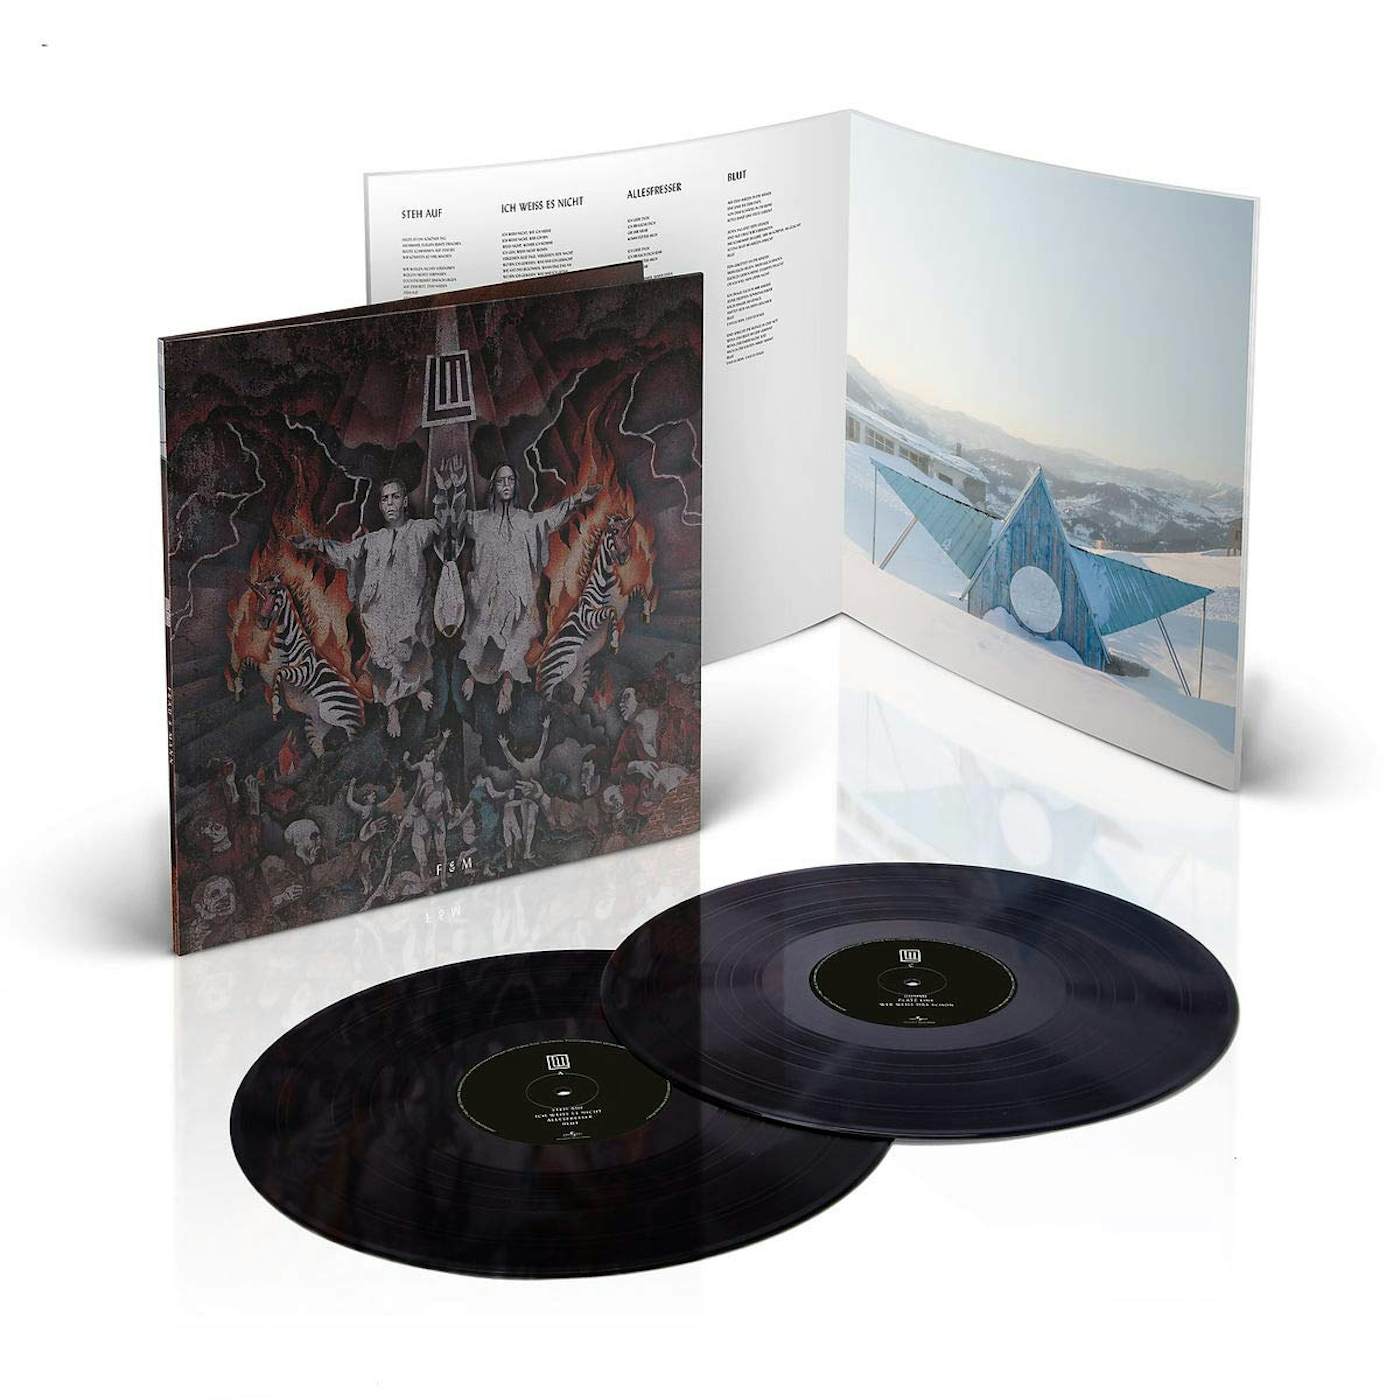 Rammstein - Reise,Reise (Vinyl) au meilleur prix sur